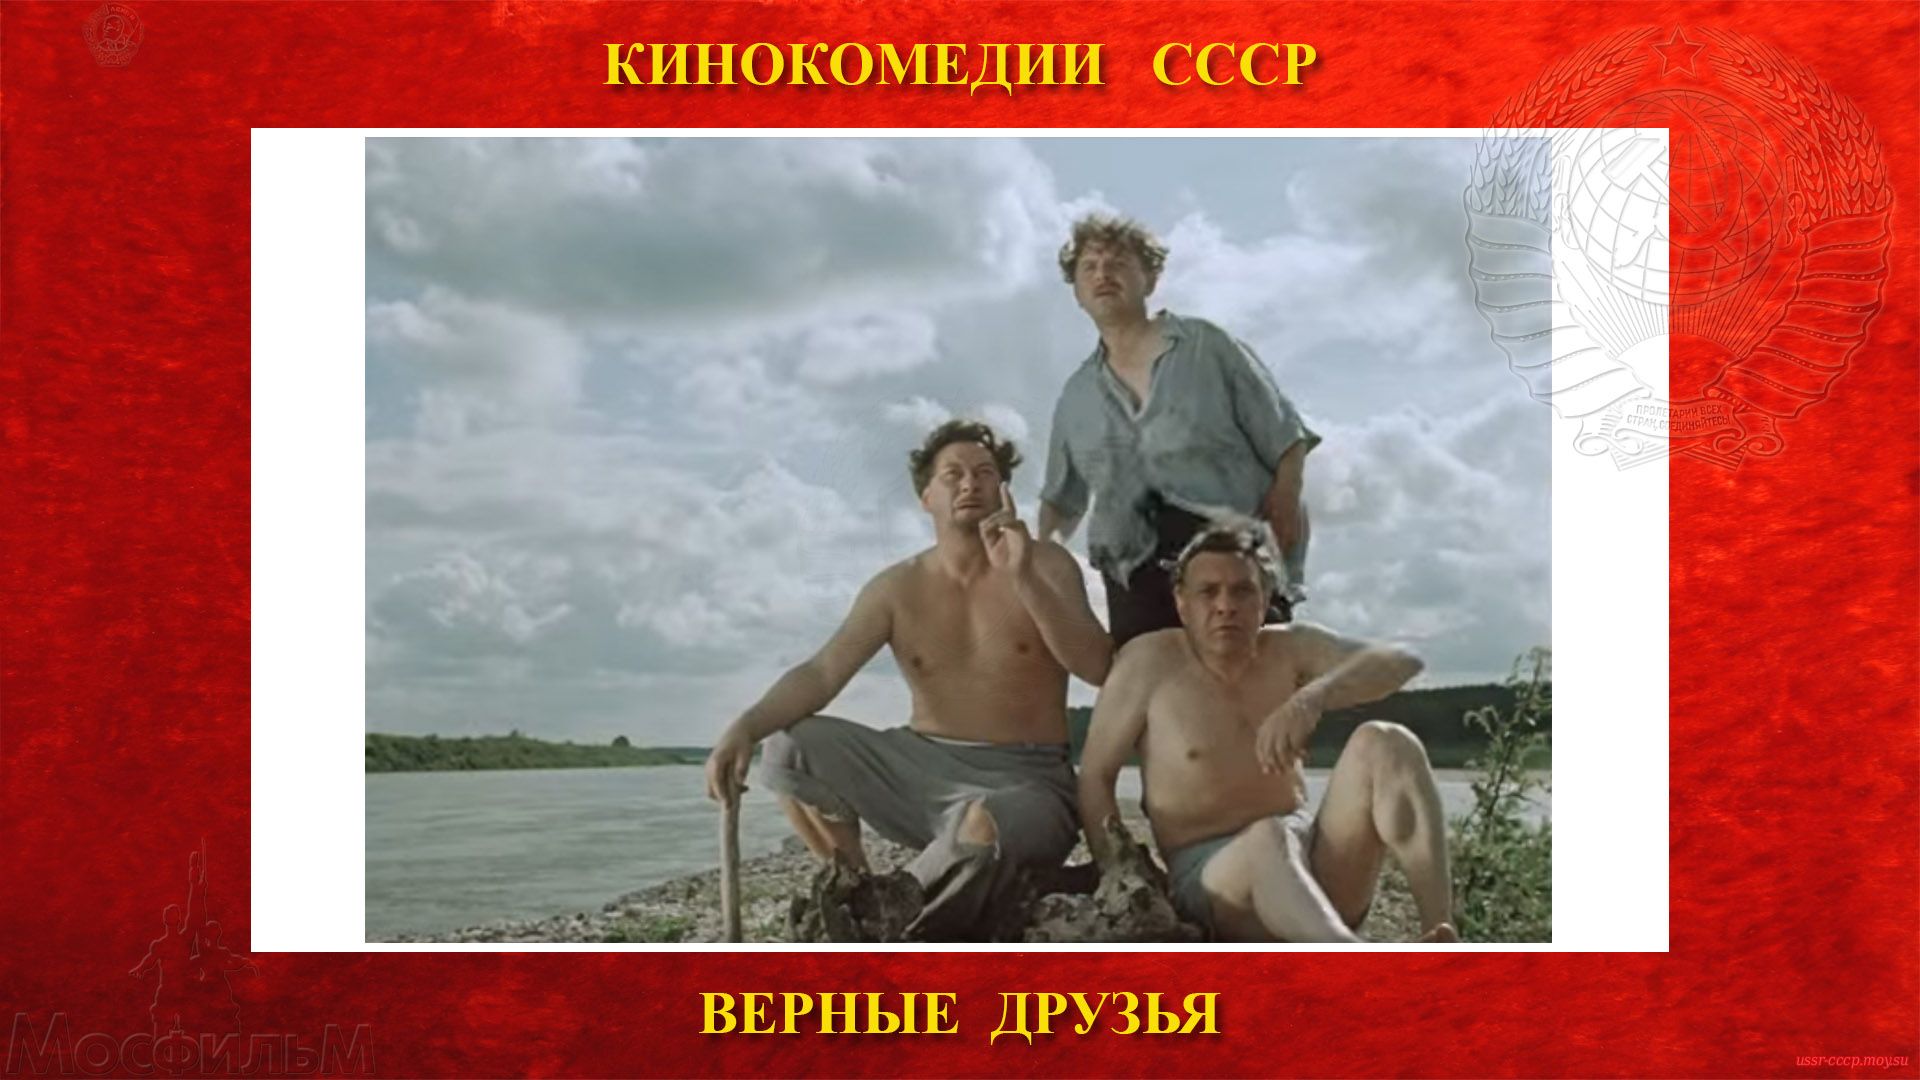 ВЕРНЫЕ ДРУЗЬЯ - Нестратов, Лапин и Чижов, на острове перед перед спасением